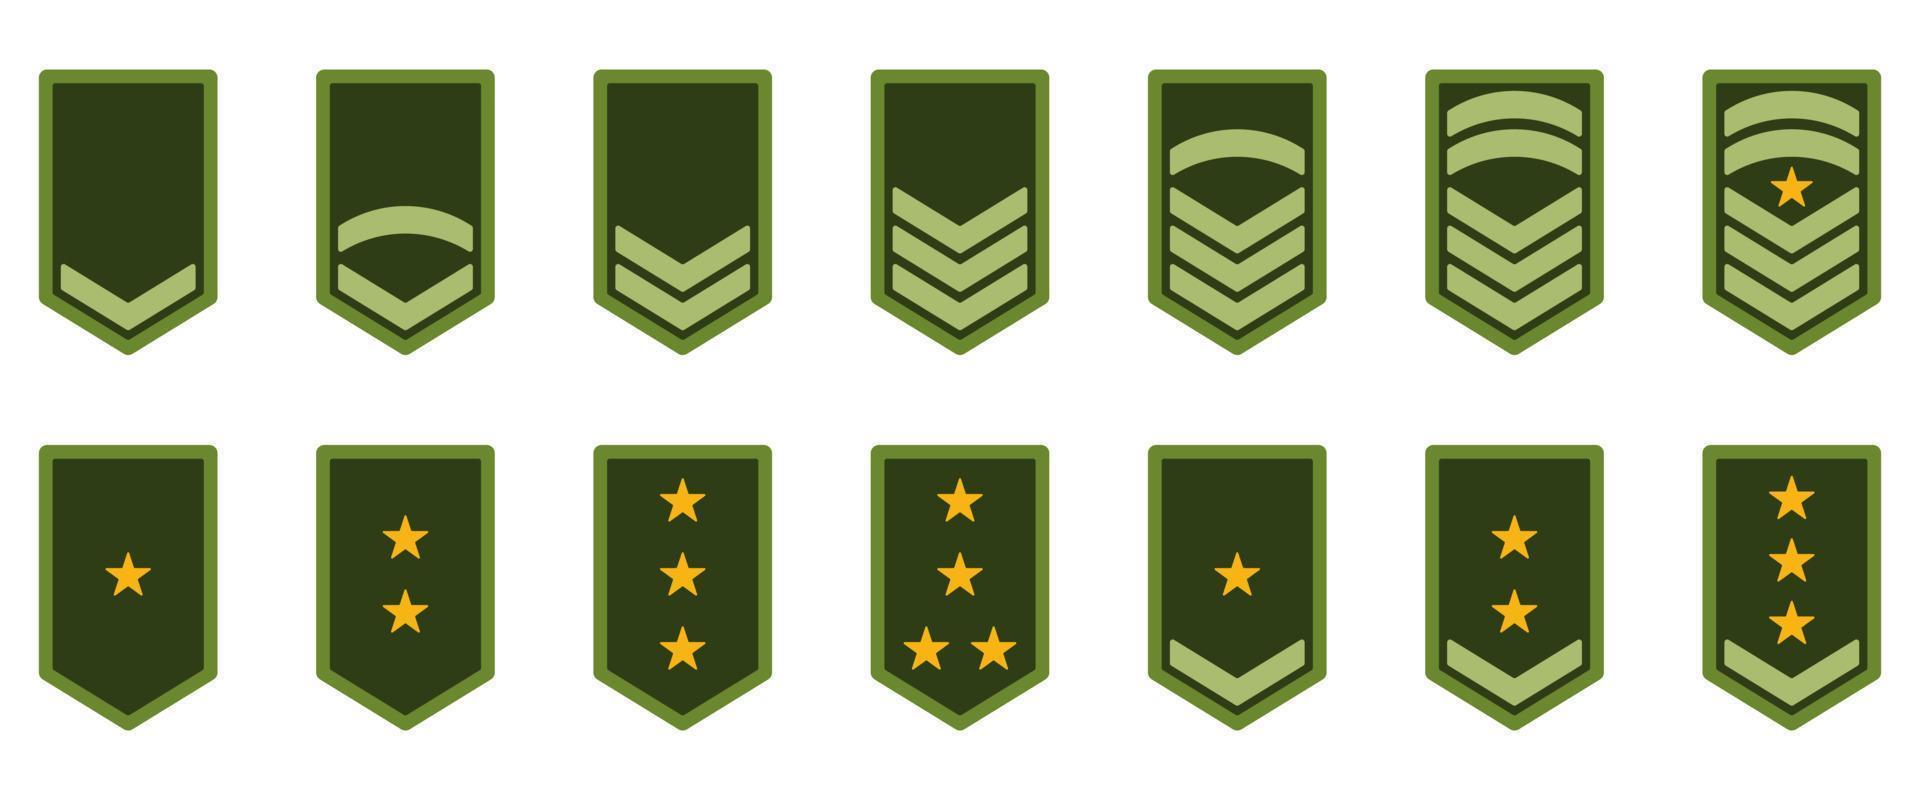 armén rang ikon. militärt märke insignier grön symbol. chevrongul stjärna och ränder logotyp. soldatsergeant, major, officer, general, löjtnant, överste emblem. isolerade vektor illustration